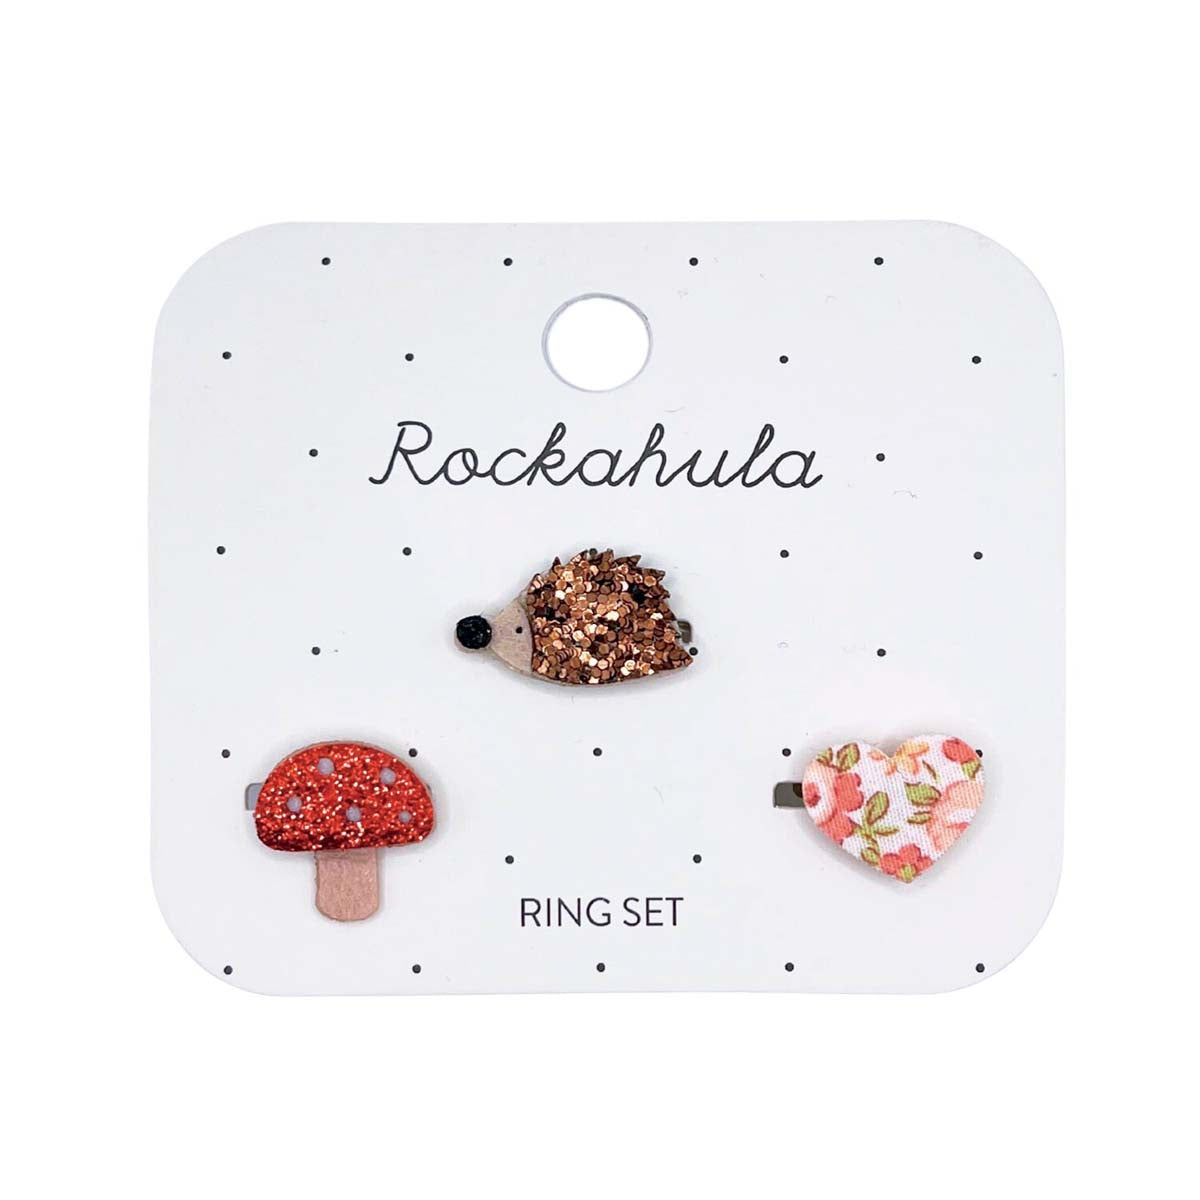 De set van Rockahula bestaat uit 3 hippe ringen uit de collectie hattie hedgehog. Versierd met een egel, hart en paddenstoel met subtiele glitter details en vrolijke kleuren. Verstelbaar. VanZus